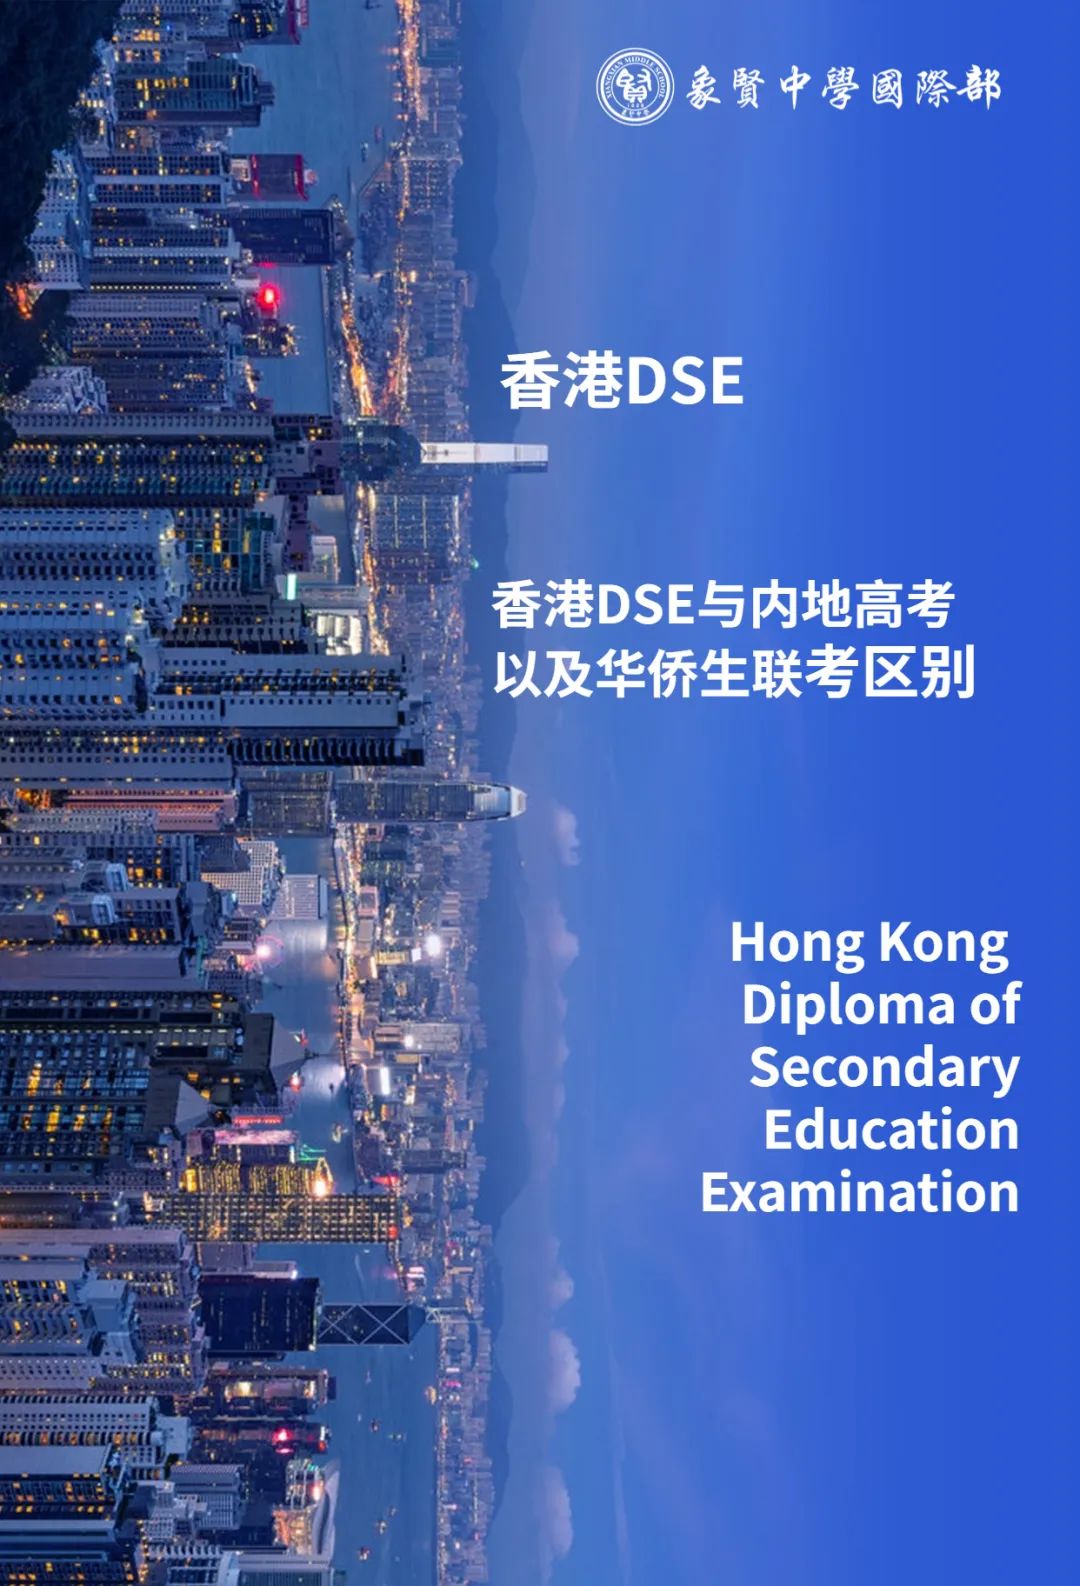 DSE干货分享 | 详细解析香港DSE、内地高考和华侨生联考的区别